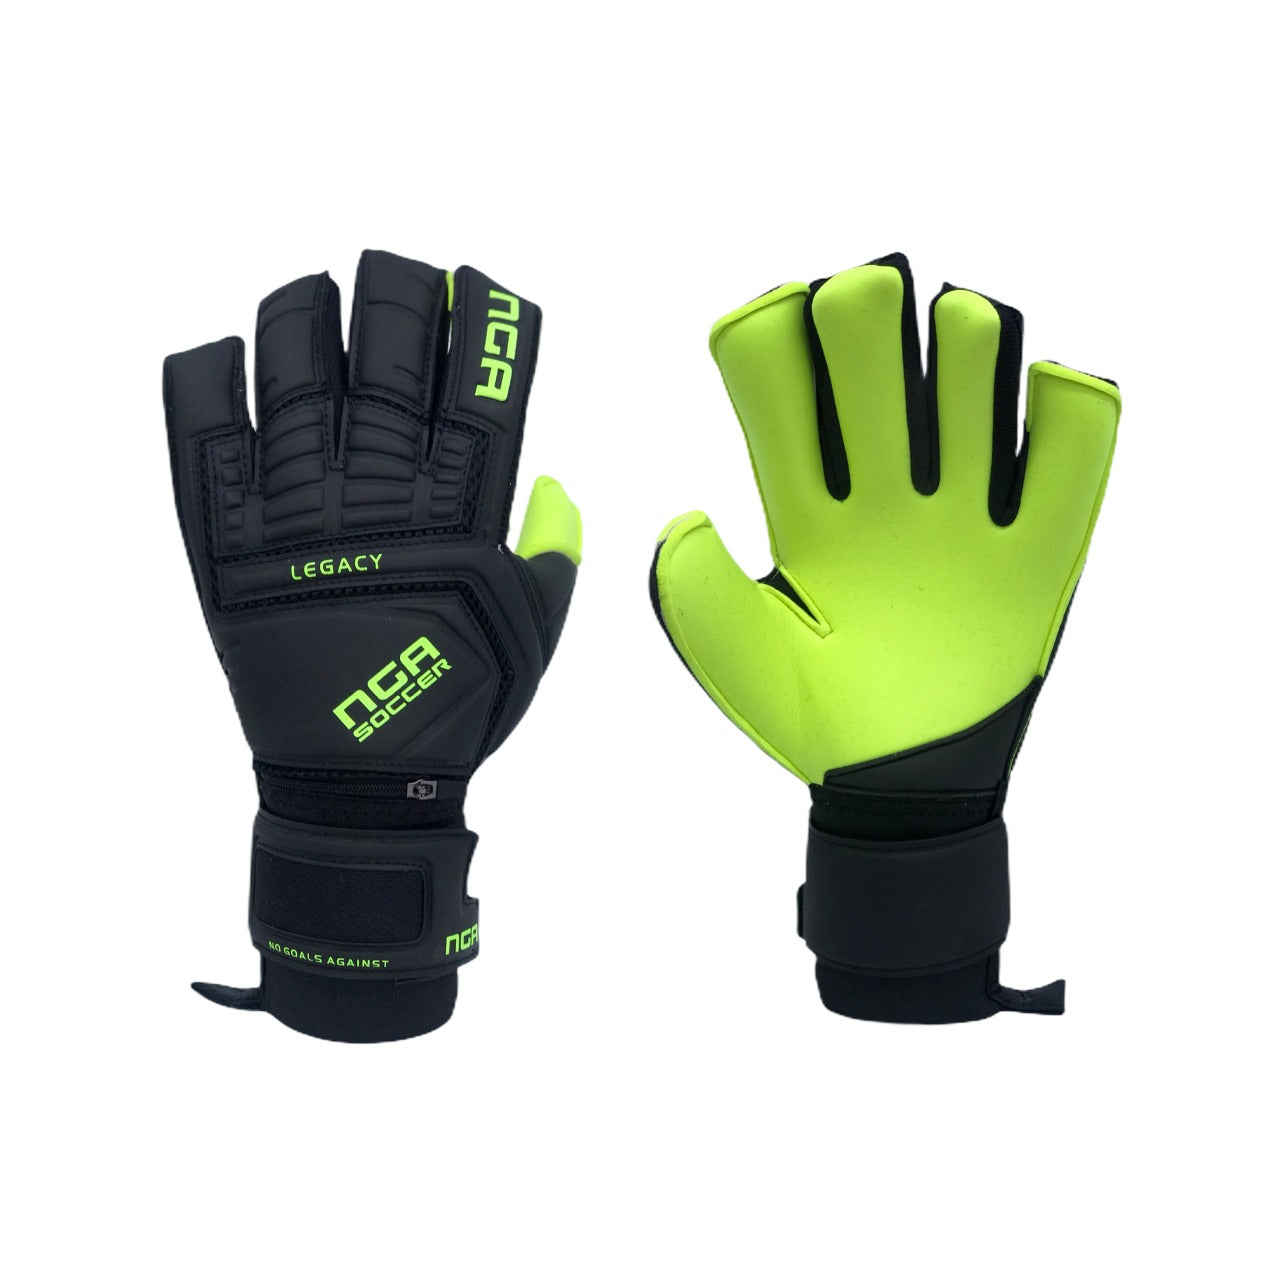 NGA 2020 Legacy Goalkeeper Glove, Black/Neon